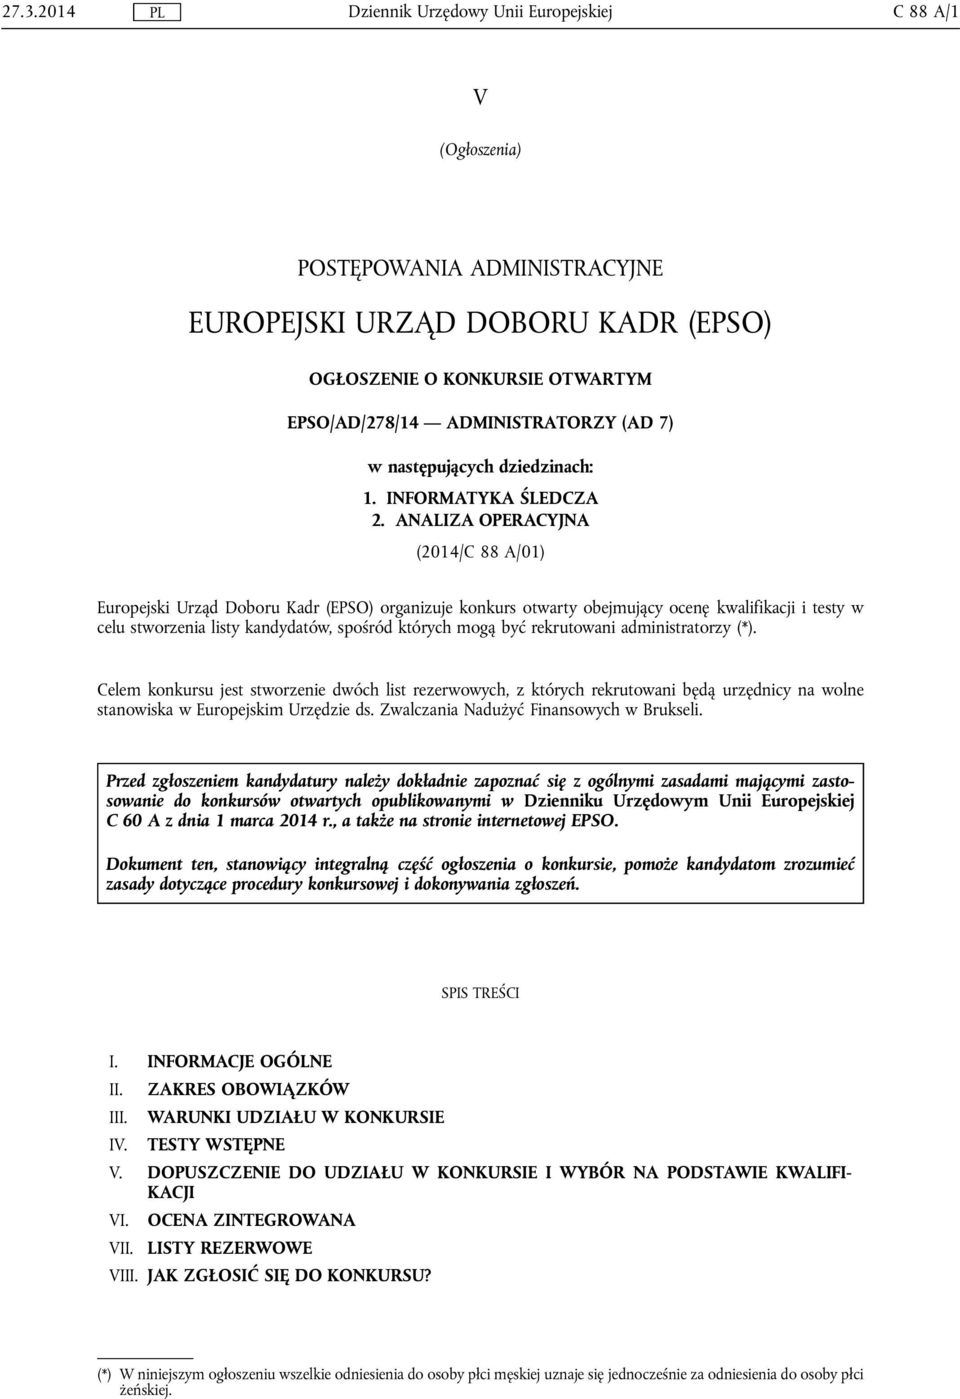 ANALIZA OPERACYJNA (2014/C 88 A/01) Europejski Urząd Doboru Kadr (EPSO) organizuje konkurs otwarty obejmujący ocenę kwalifikacji i testy w celu stworzenia listy kandydatów, spośród których mogą być